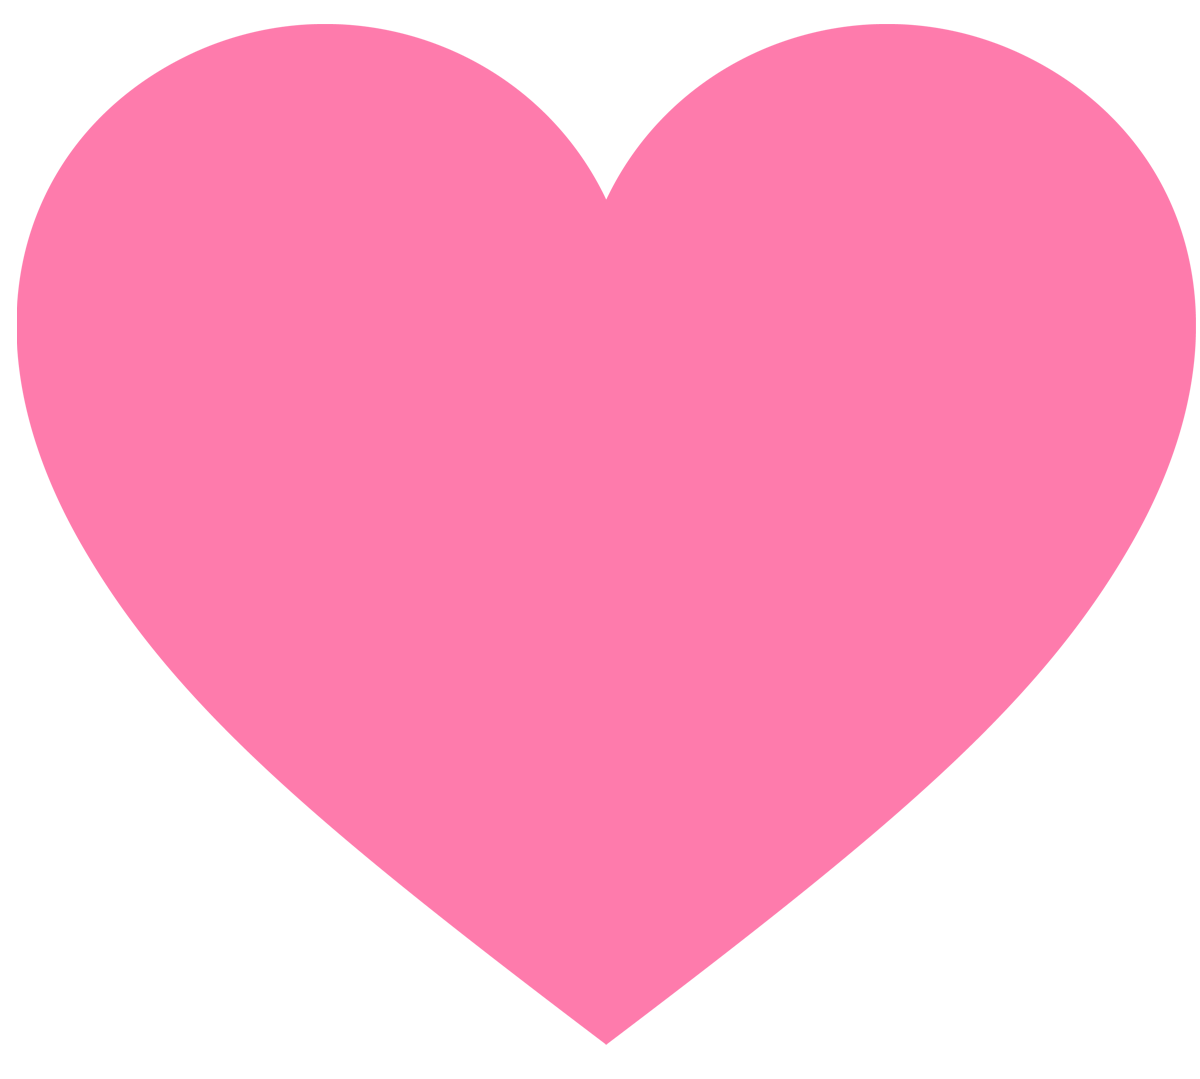 Pink Hearts : Pink Heart Backgrounds ·① WallpaperTag - Slagt Wentis